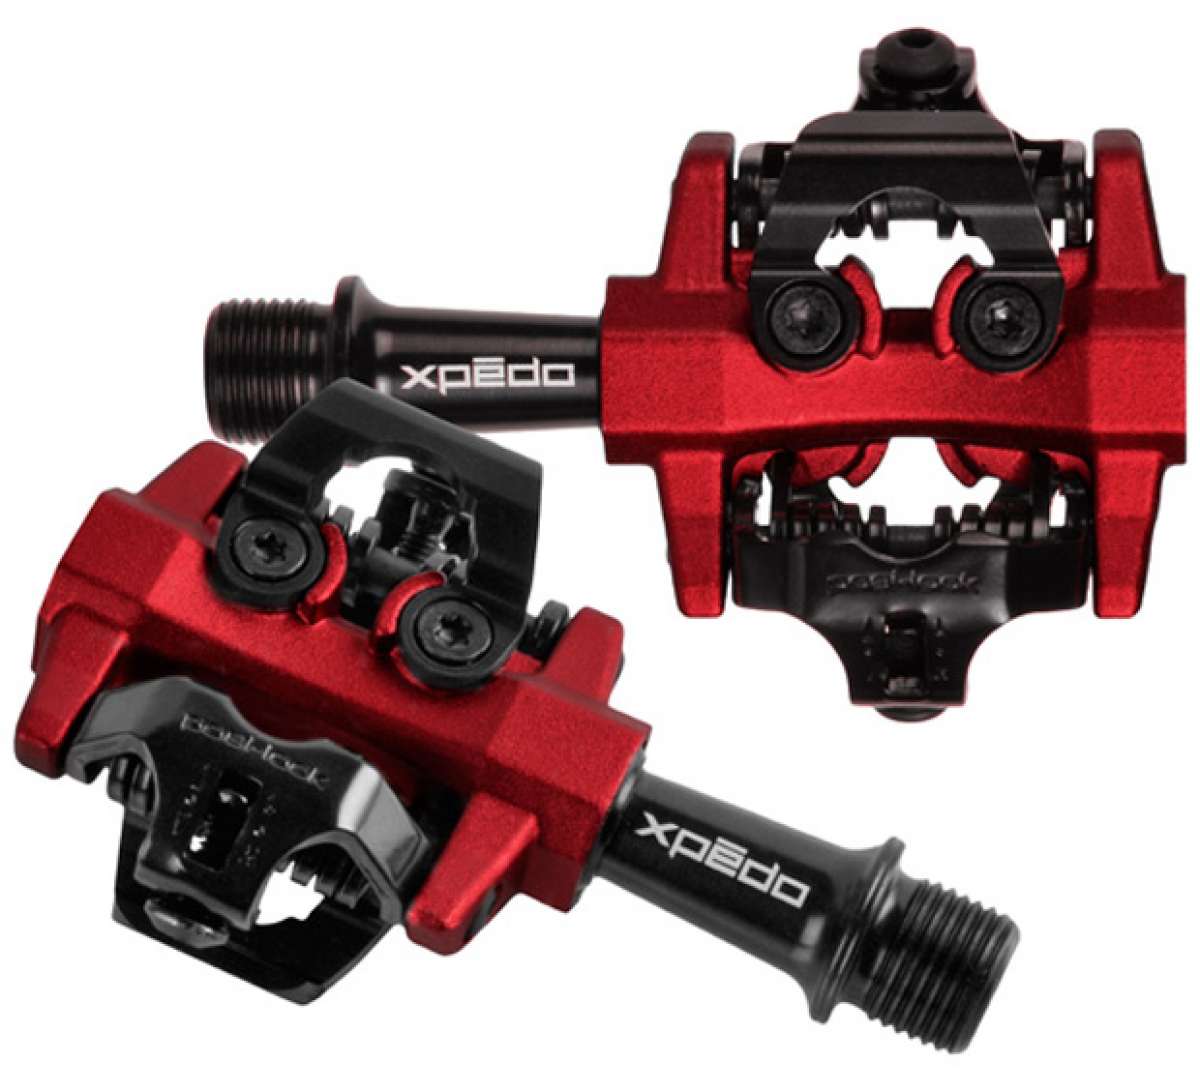 Nuevos pedales automáticos Xpēdo CXR para ciclocross... y para mucho más